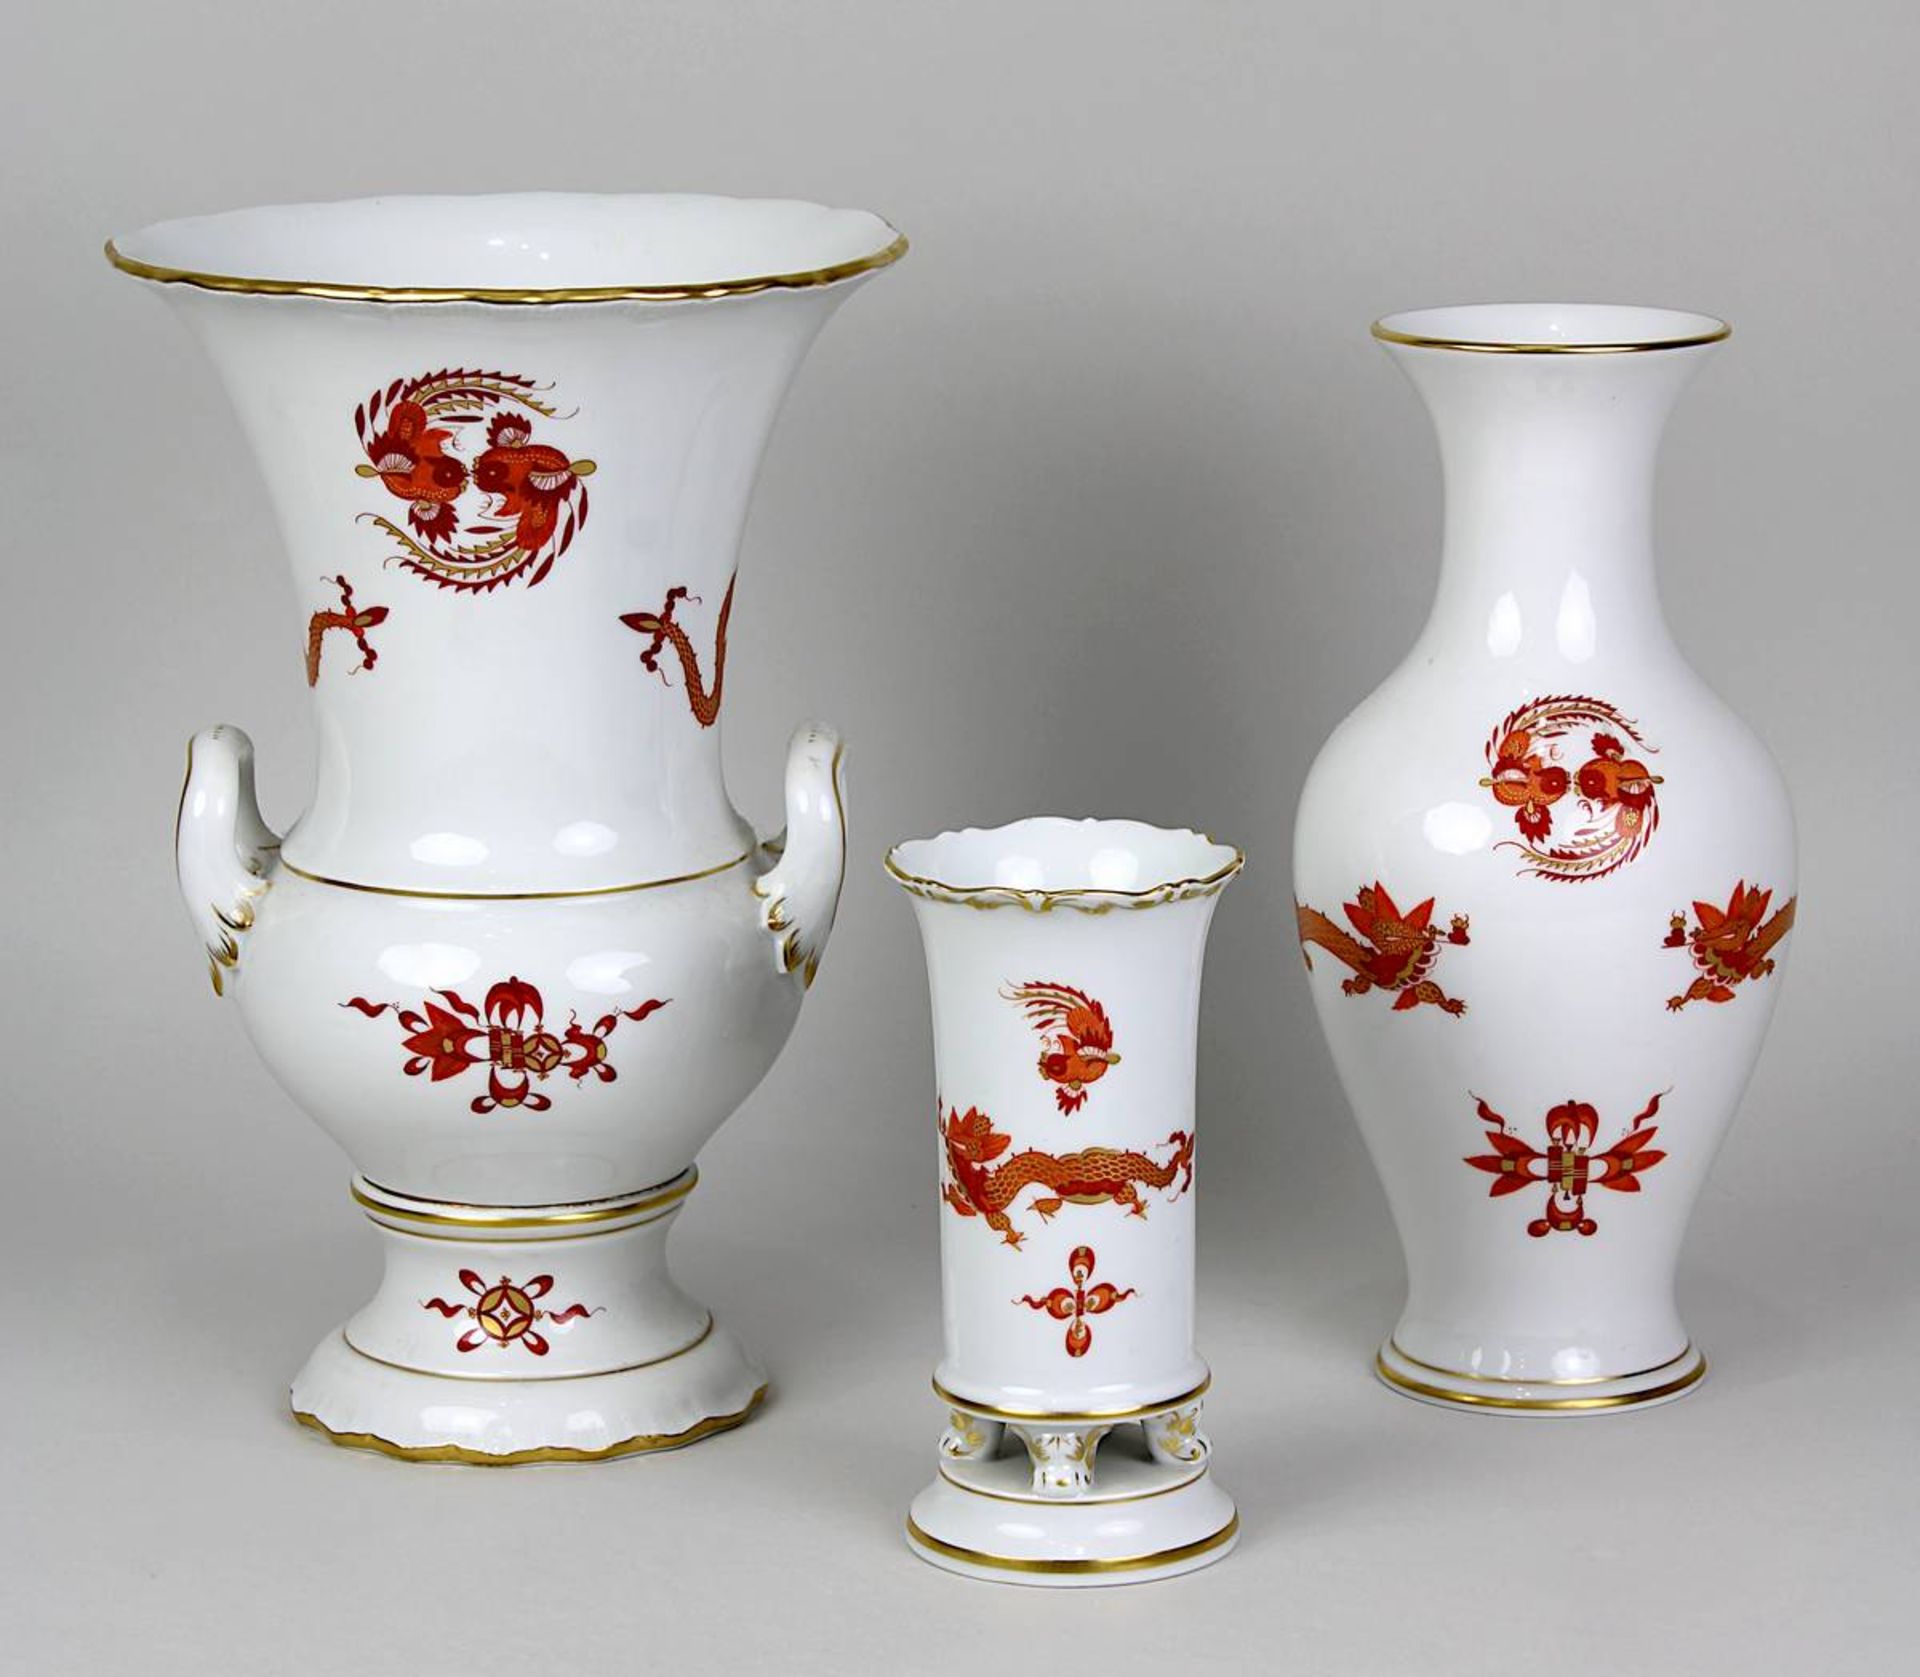 Drei Vasen, Meissen 2. H. 20. Jh., Dekor roter Drache mit Goldrändern, purpur u. gold staffiert: